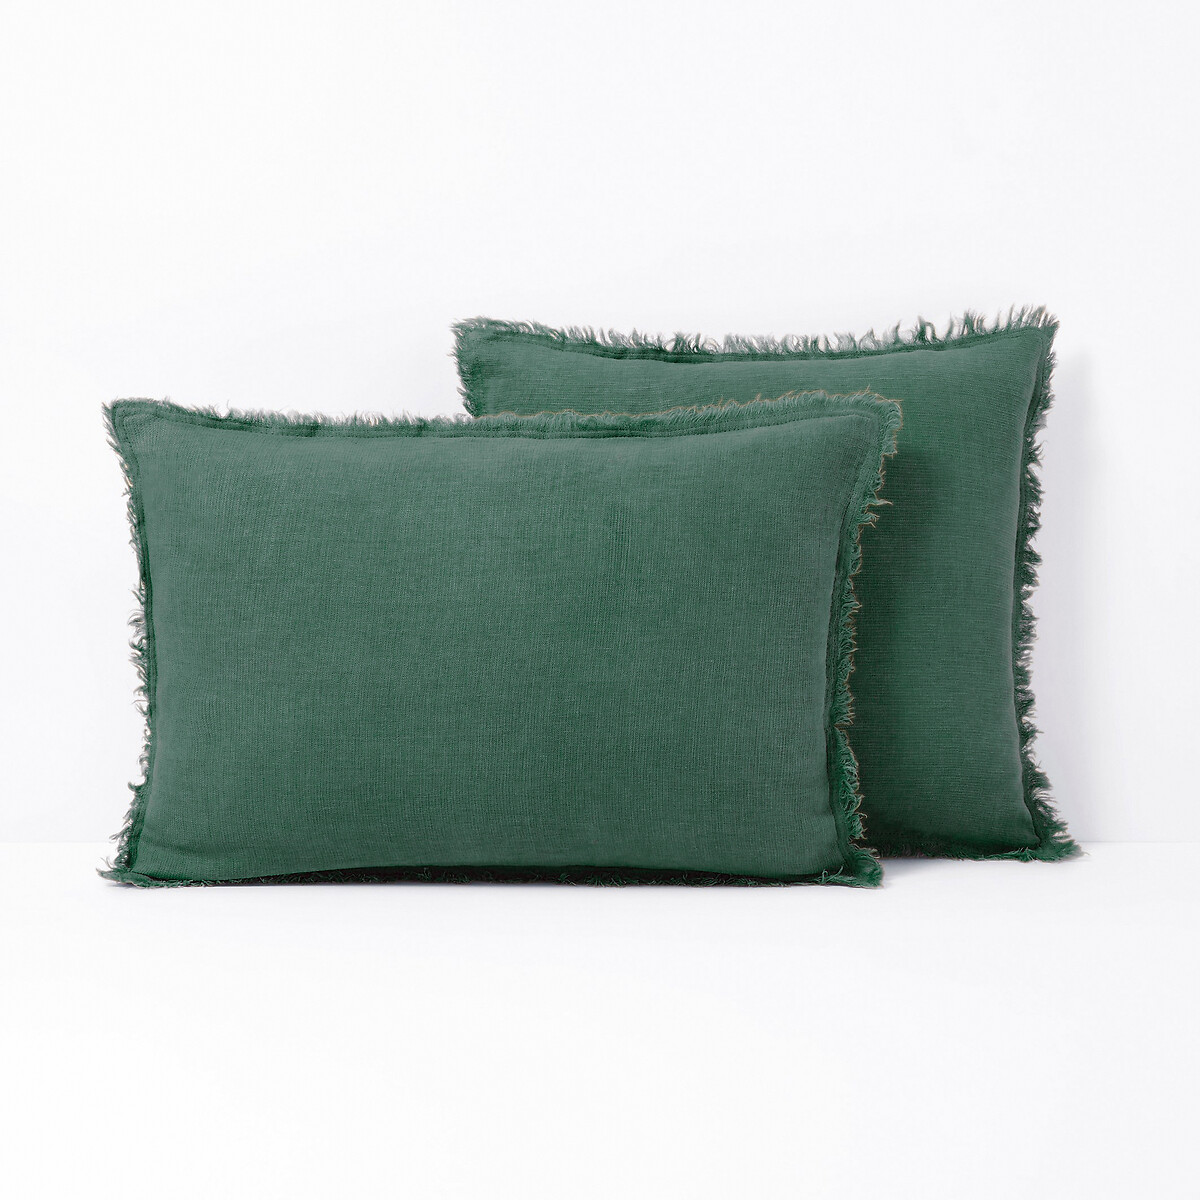 Чехол LaRedoute На подушку 100 лен Linange 50 x 50 см зеленый, размер 50 x 50 см - фото 1